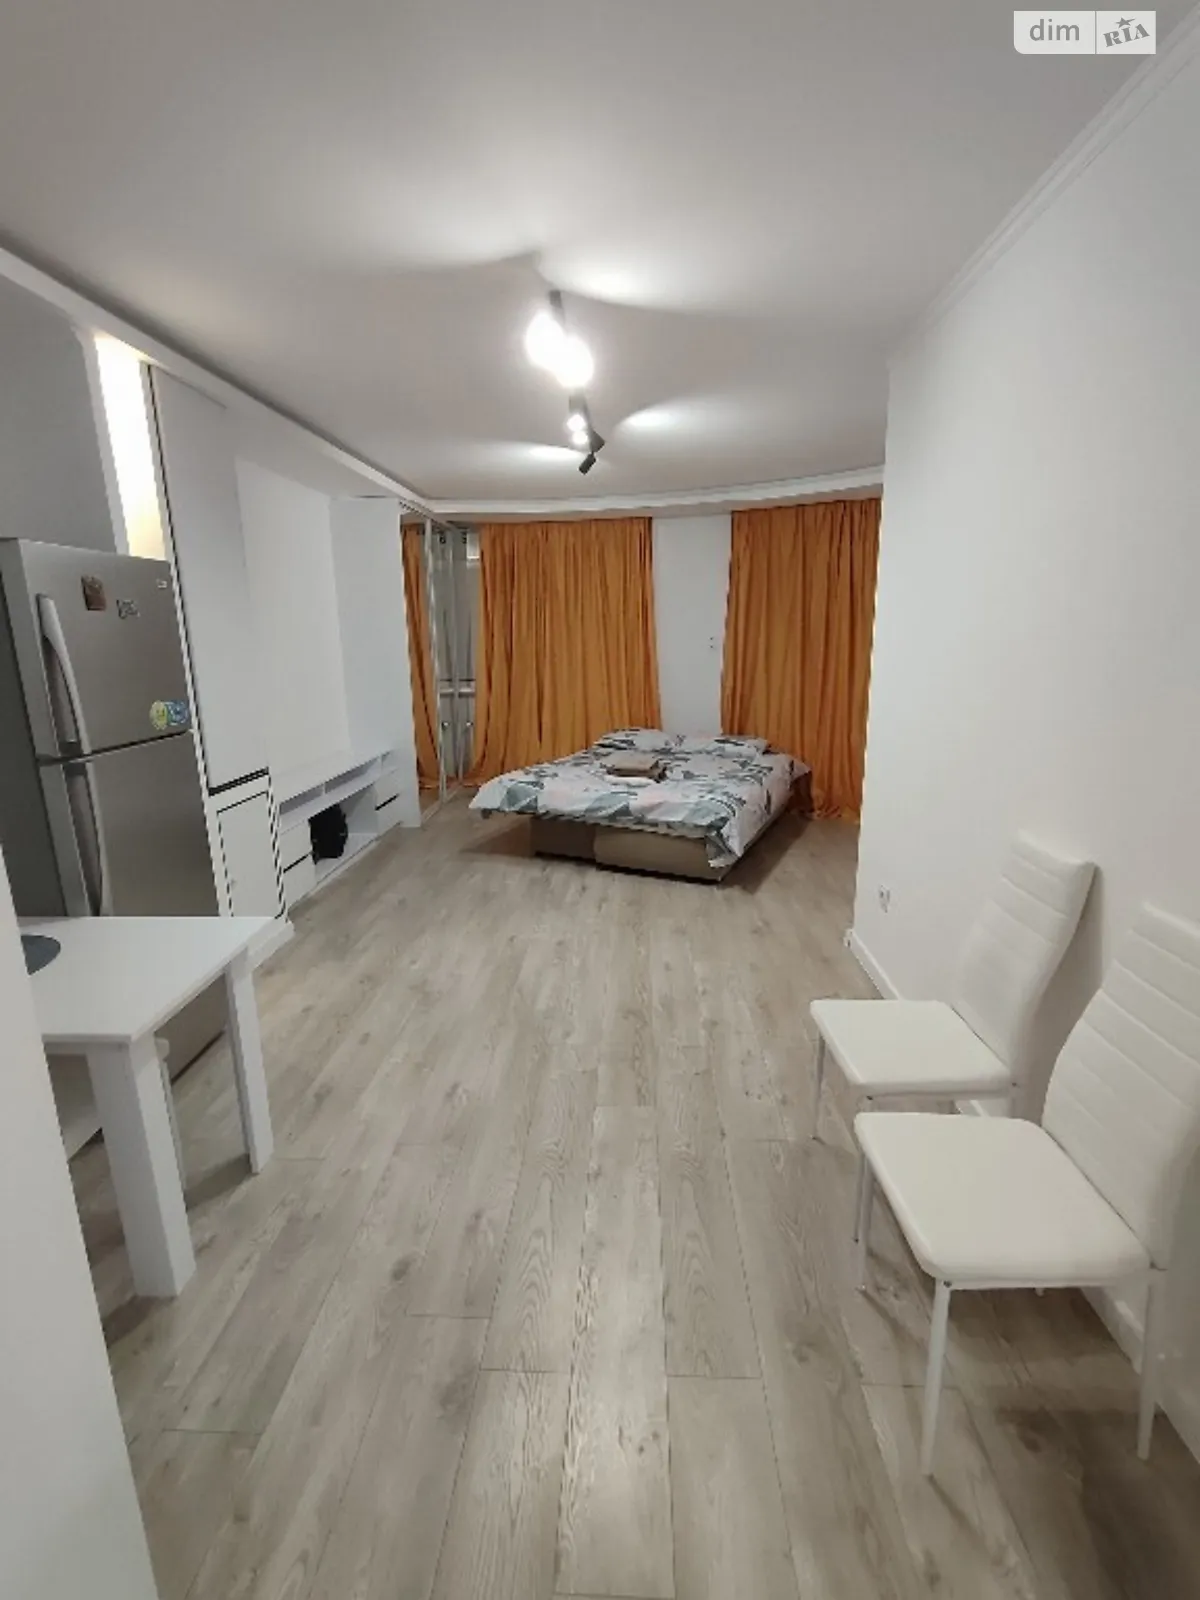 1-кімнатна квартира у Тернополі, цена: 750 грн